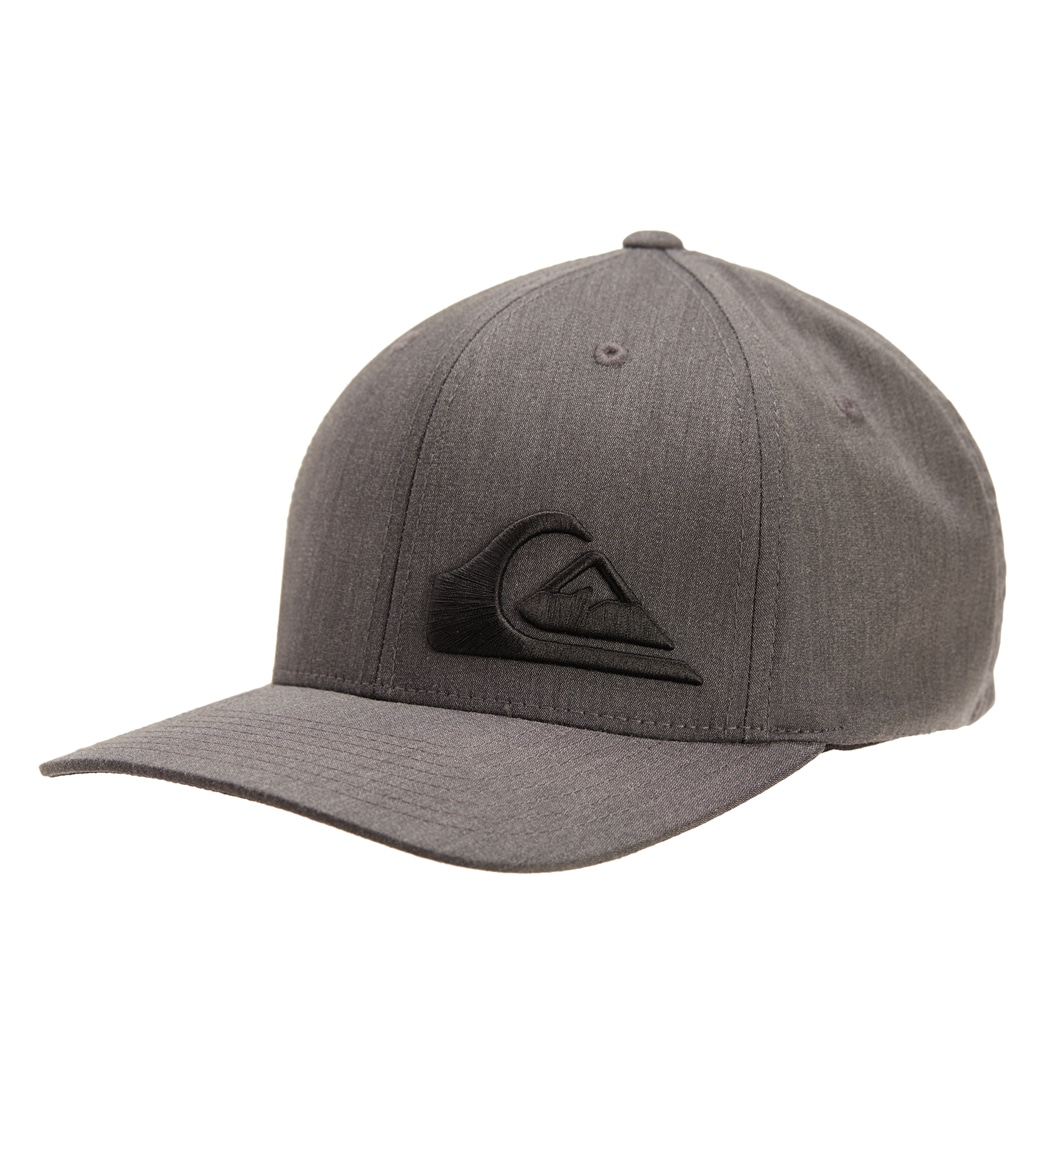 Quiksilver Men's Final Hat - Black Large/Xl - Swimoutlet.com